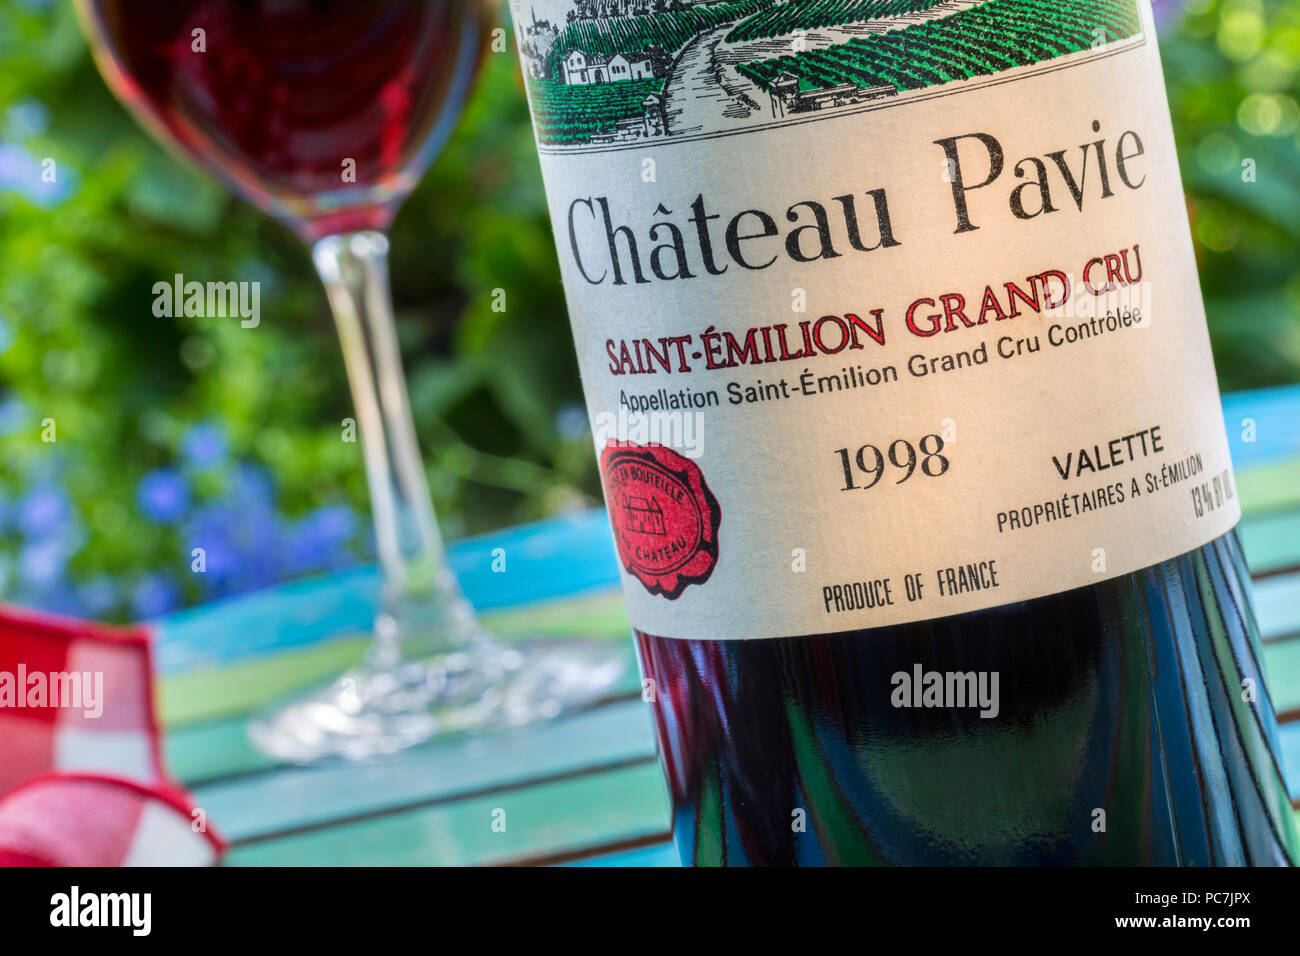 Chateau Pavie 1998 SAINT ÉMILION Flasche und Glas Grand Cru St-Emilion Bordeaux französischer Wein Weinprobe Situation im Freien auf der Gartenterrasse Tabelle Stockfoto